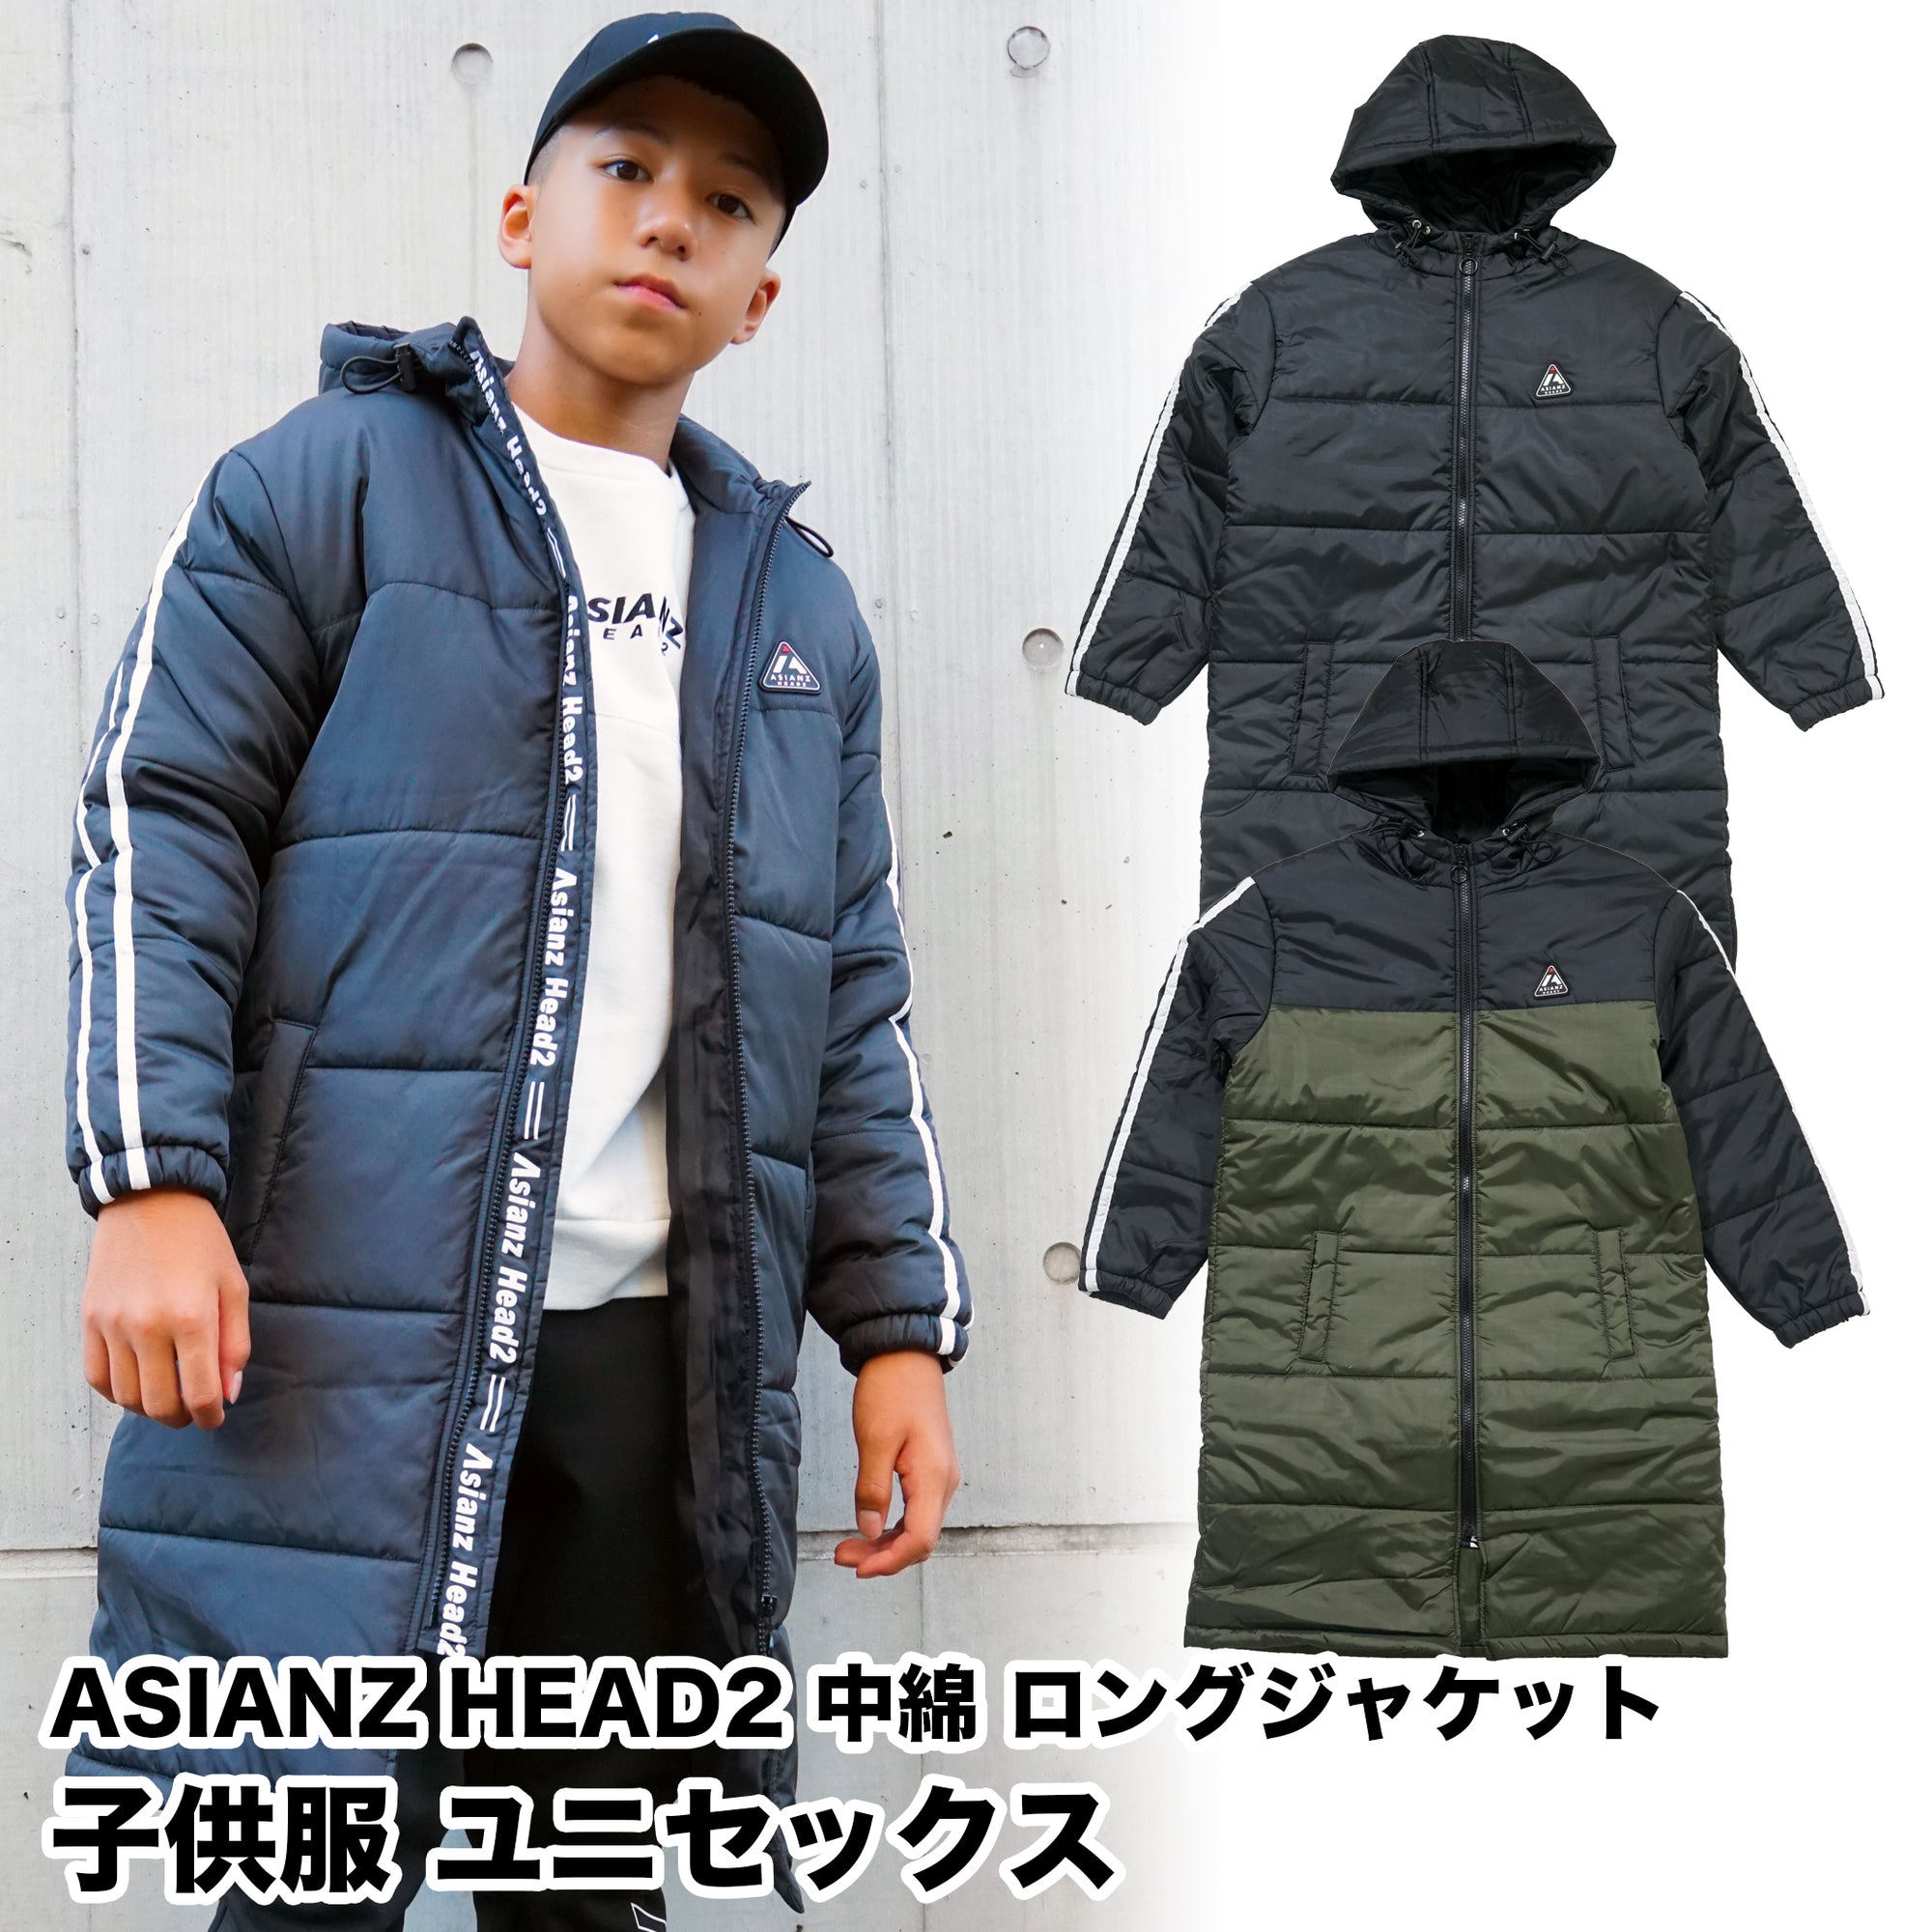 (40%オフ! セール商品)ASIANZ HEAD2 中綿ロングジャケット キッズウェアー